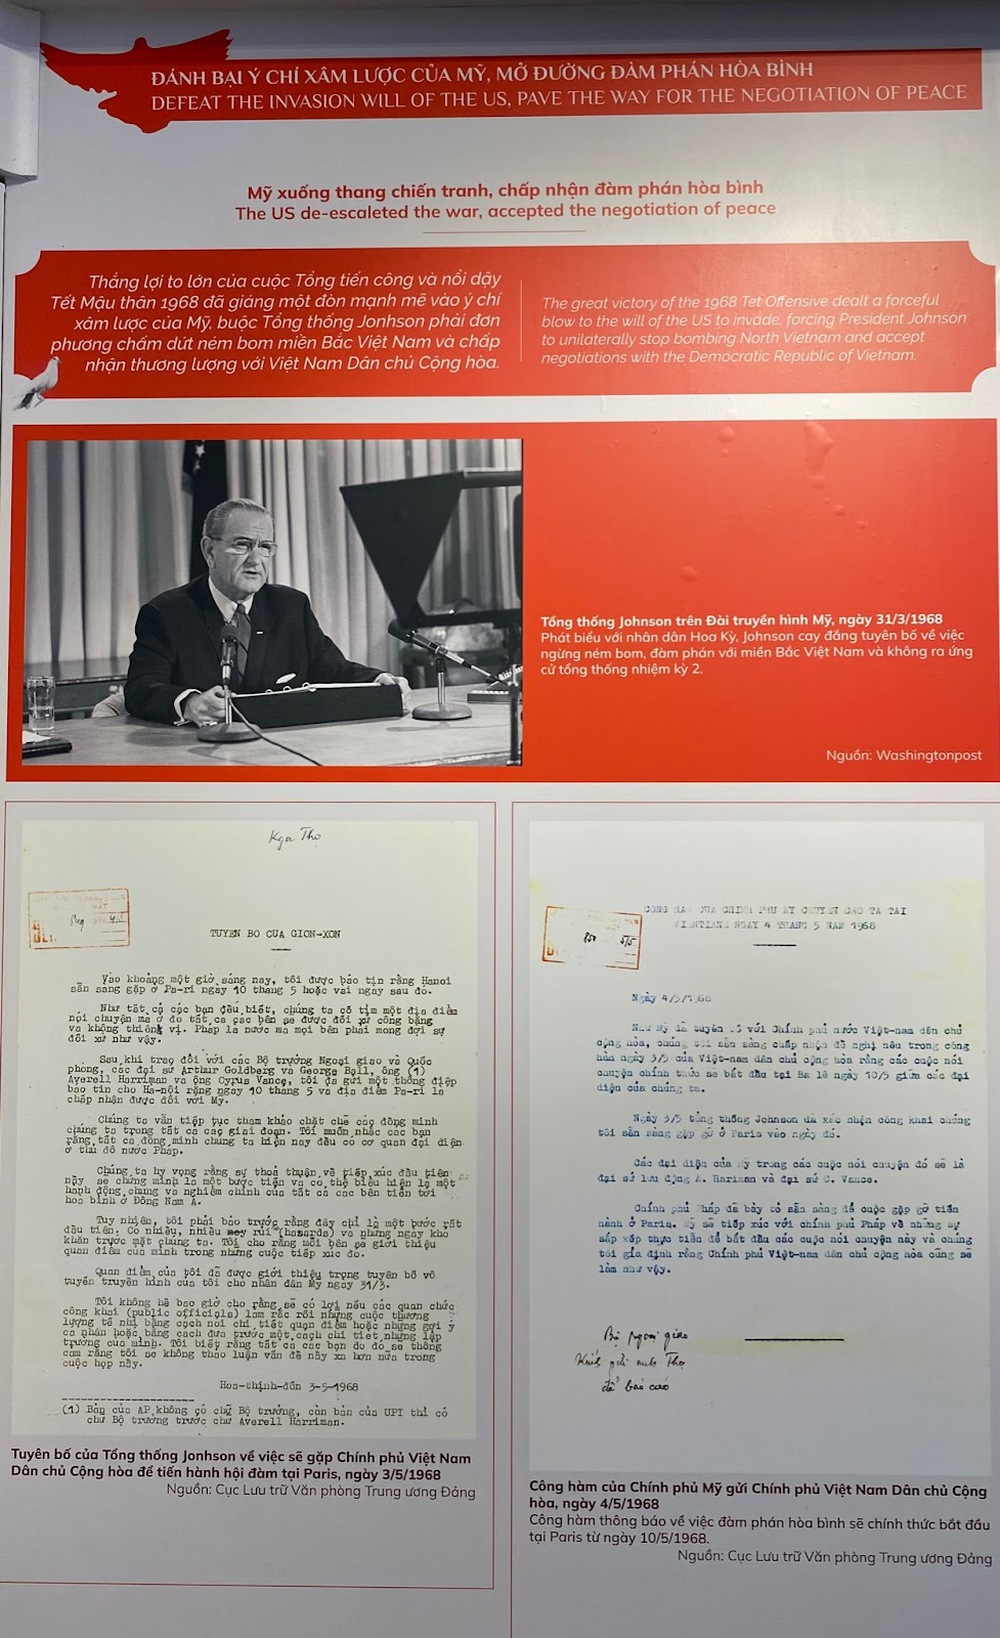 Triển lãm “Hiệp định Paris - Cánh cửa hoà bình”: Giới thiệu tới công chúng hơn 250 tư liệu - Ảnh 6.